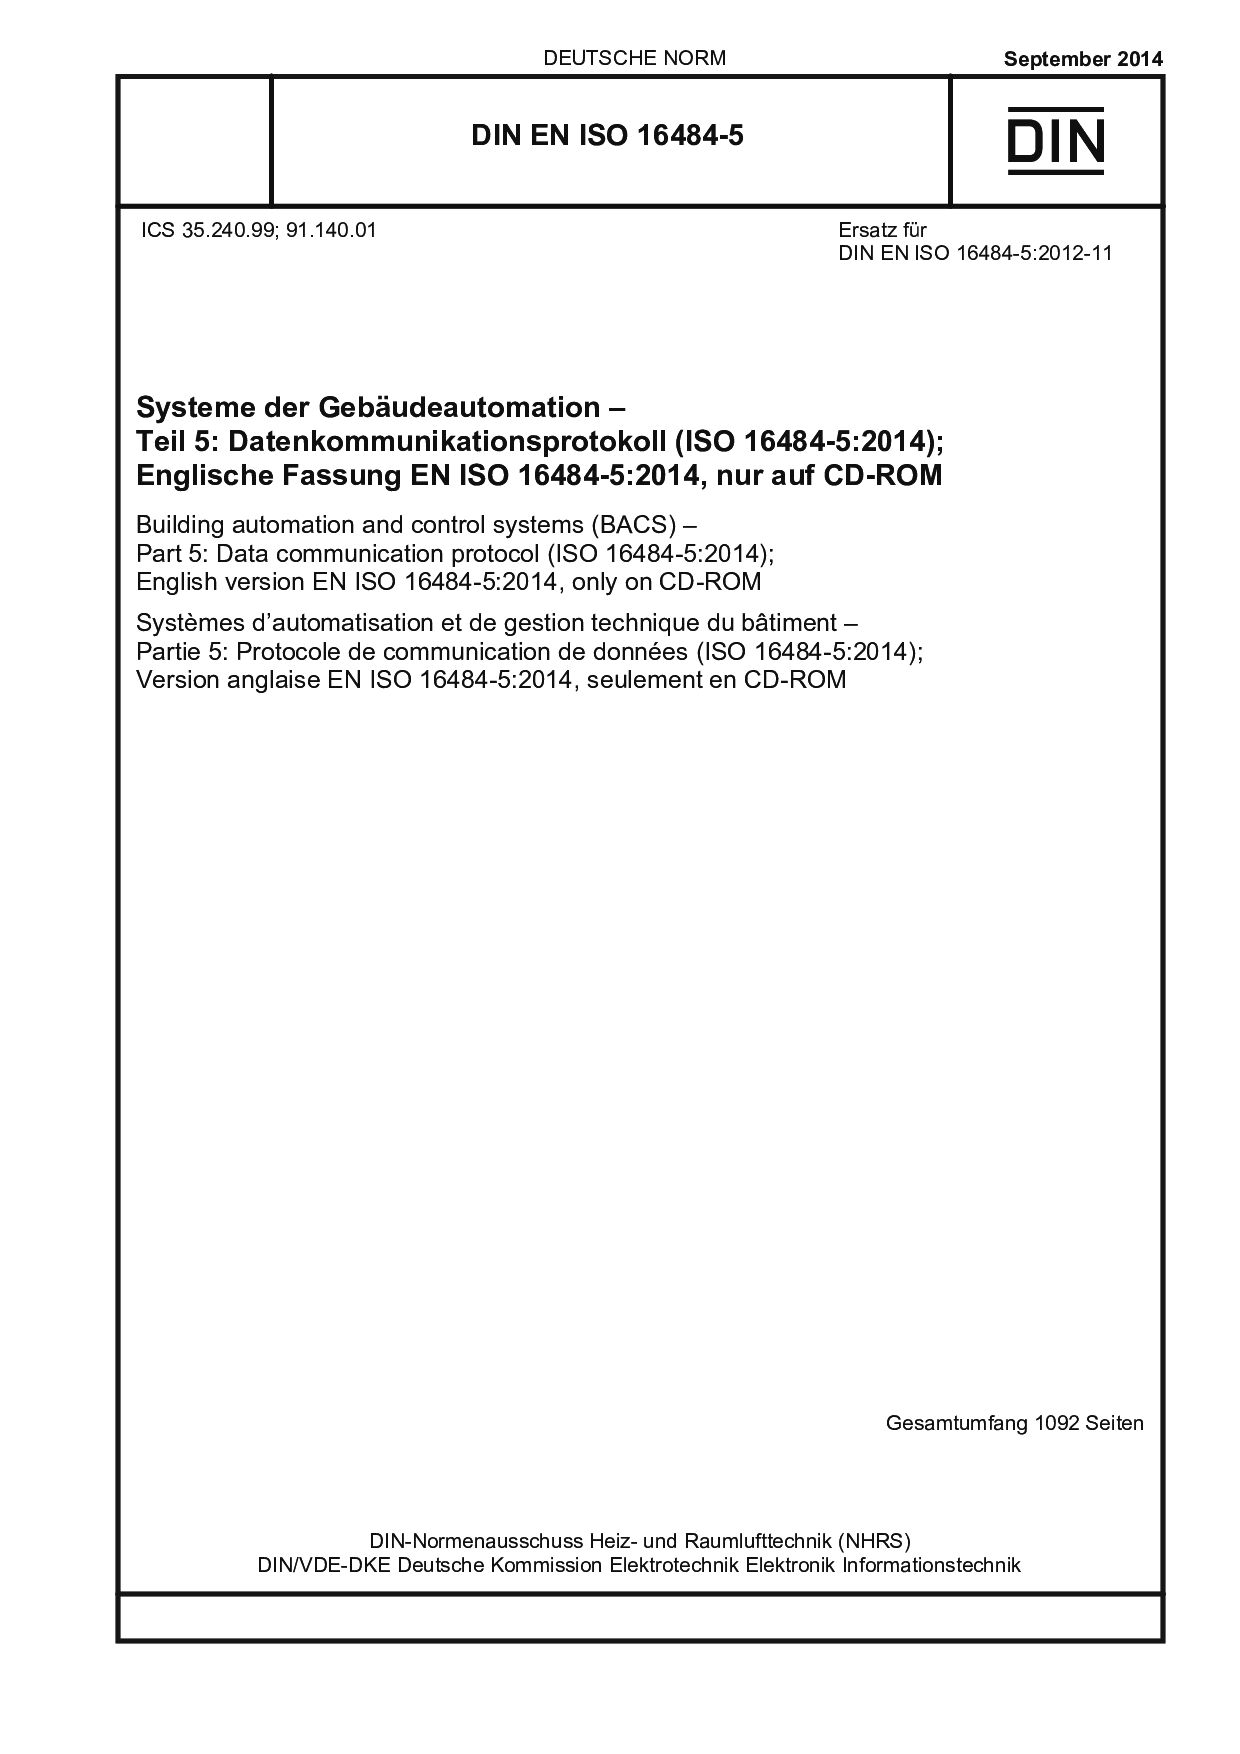 DIN EN ISO 16484-5:2014